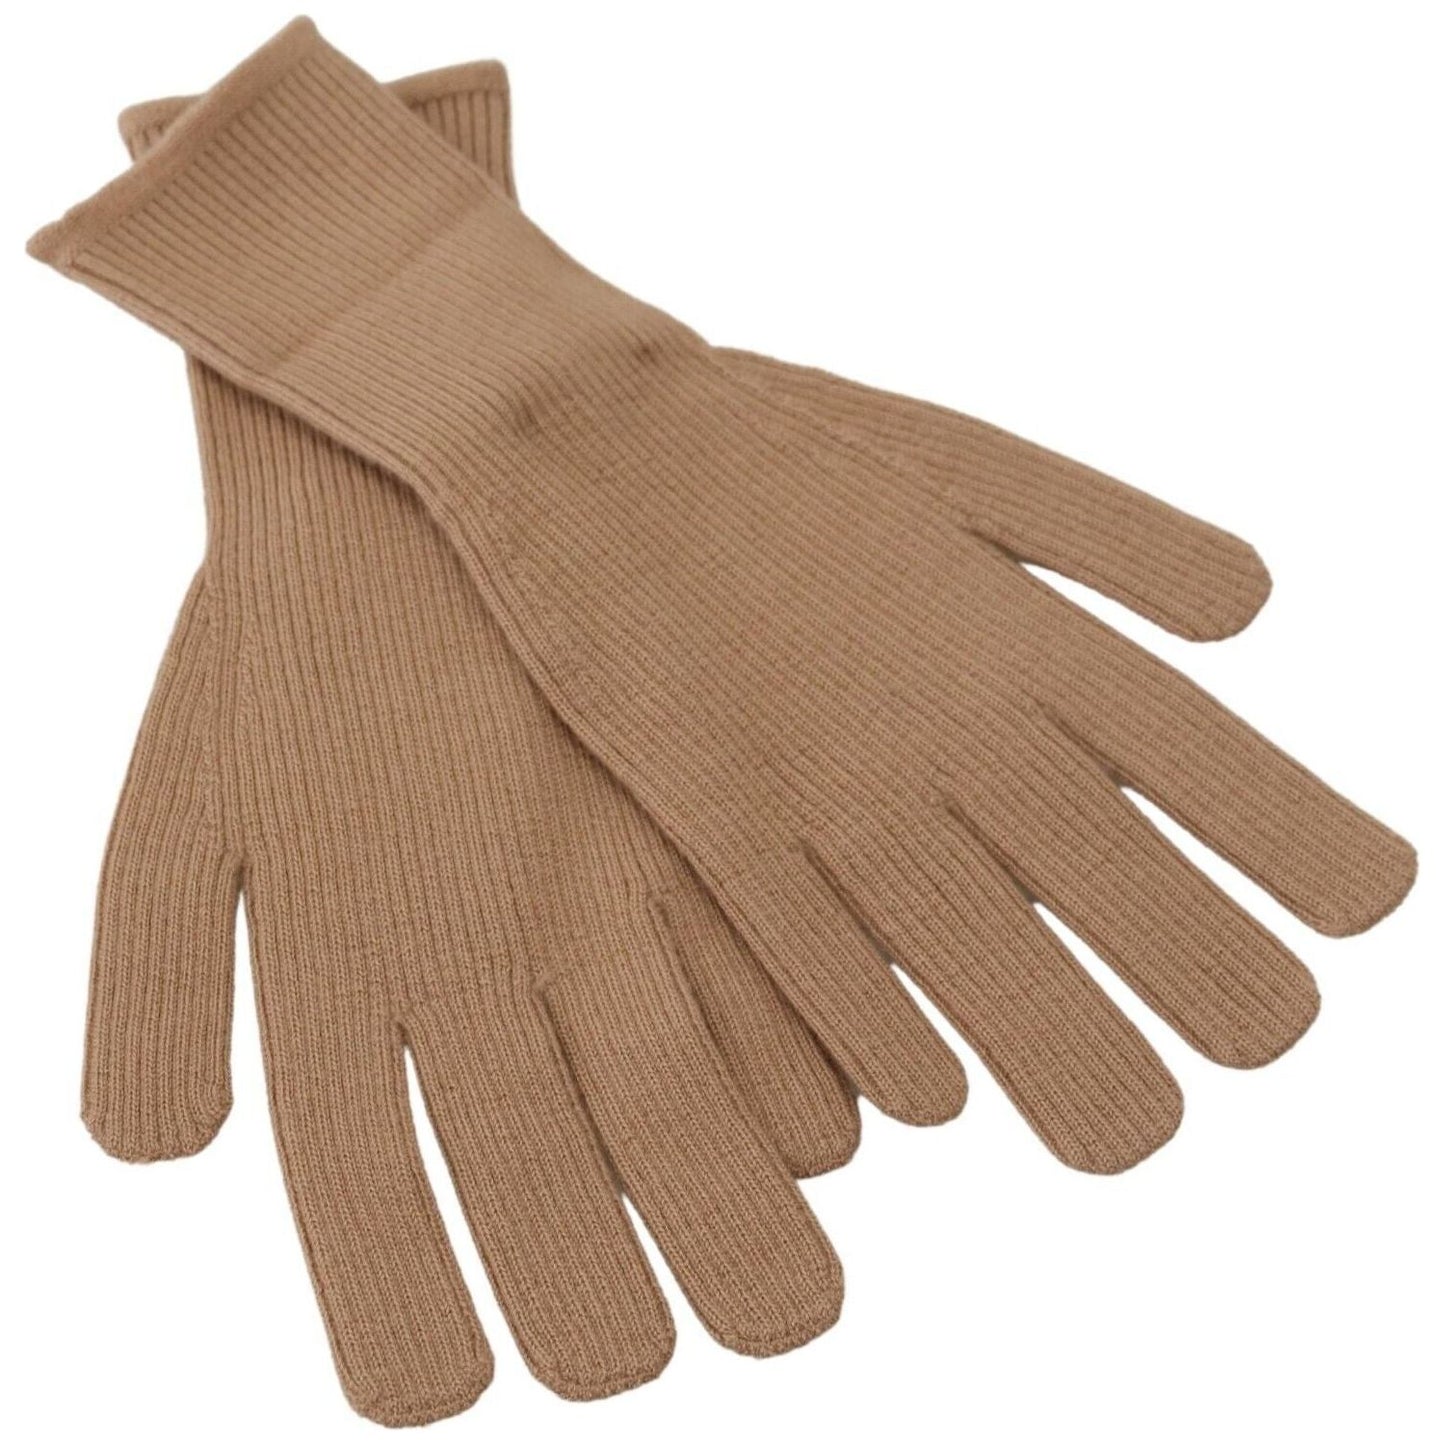 Dolce & Gabbana Elegant Beige Cashmere Winter Gloves beige-cashmere-knitted-hands-mitten-mens-gloves s-l1600-19-4-cba9a260-d30.jpg